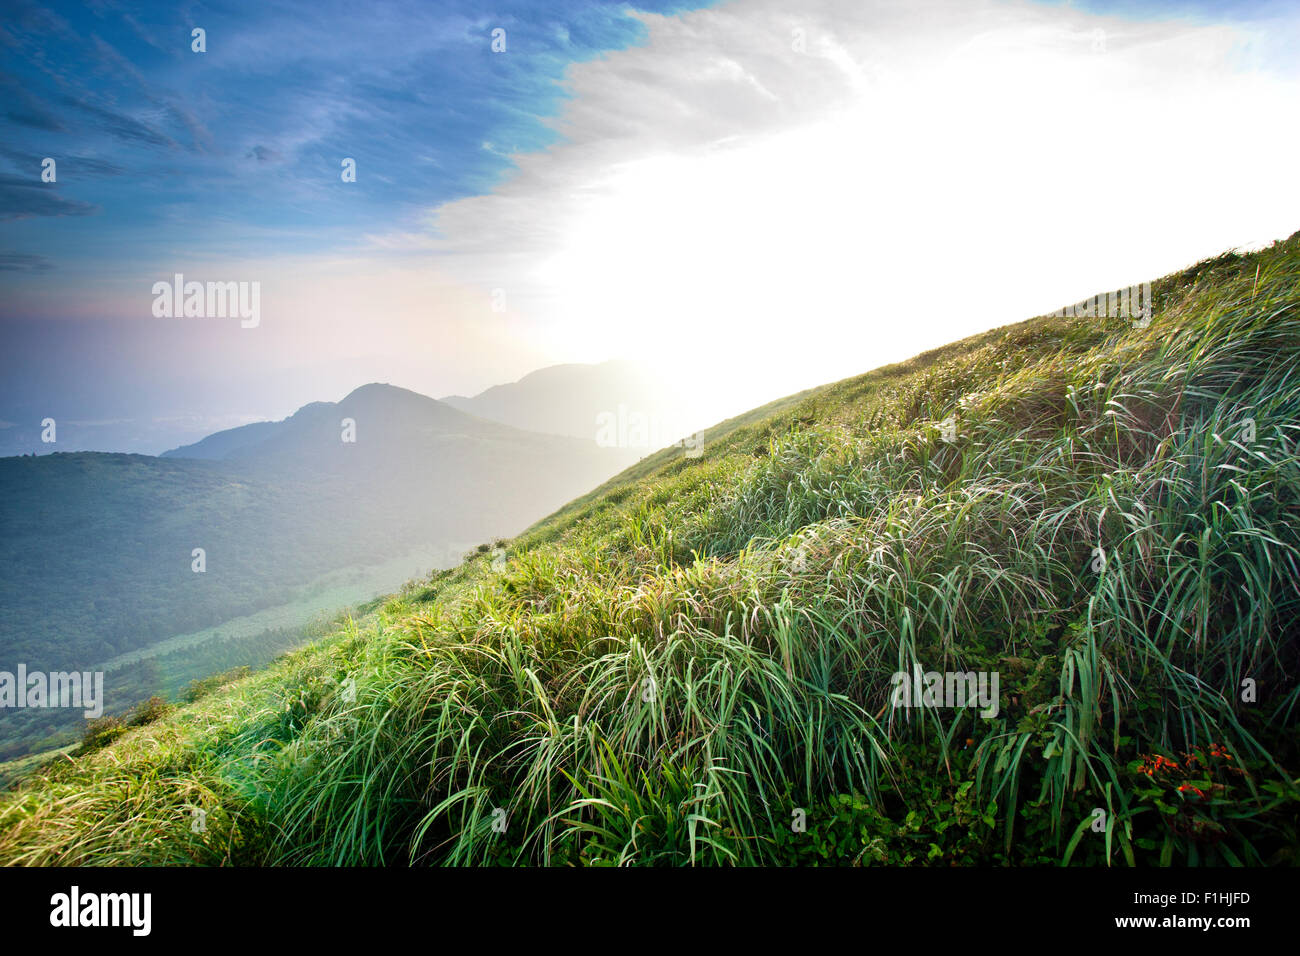 Hermoso paisaje de montañas con sun contra el azul cielo nublado Foto de stock